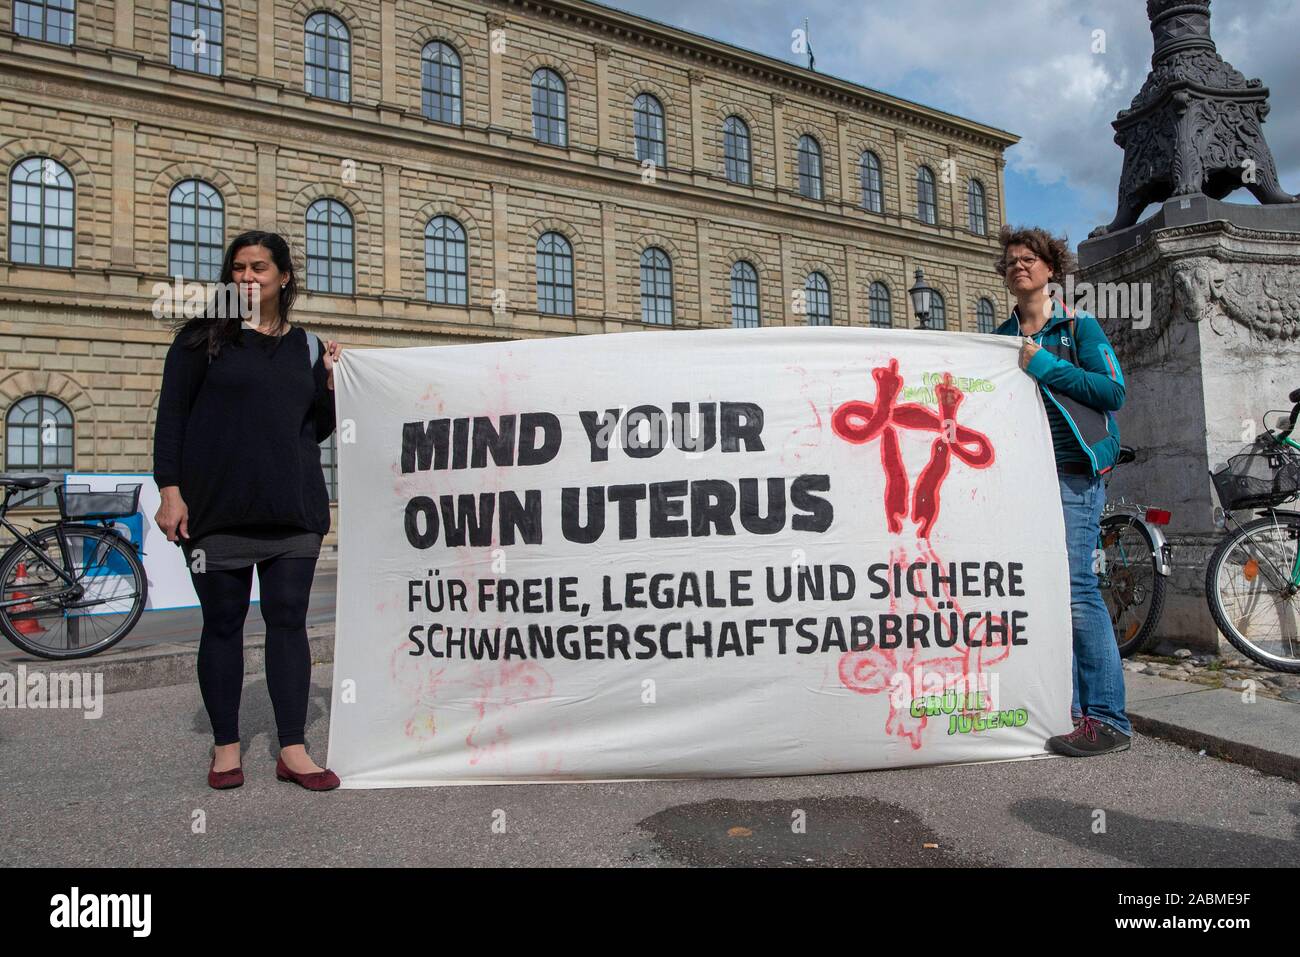 Bajo el lema "el aborto fuera del código penal", hombres y mujeres demostrarán en Munich (Alta Baviera) el sábado, 28 de septiembre de 2019 en la Max-Joseph-Platz. [Traducción automática] Foto de stock